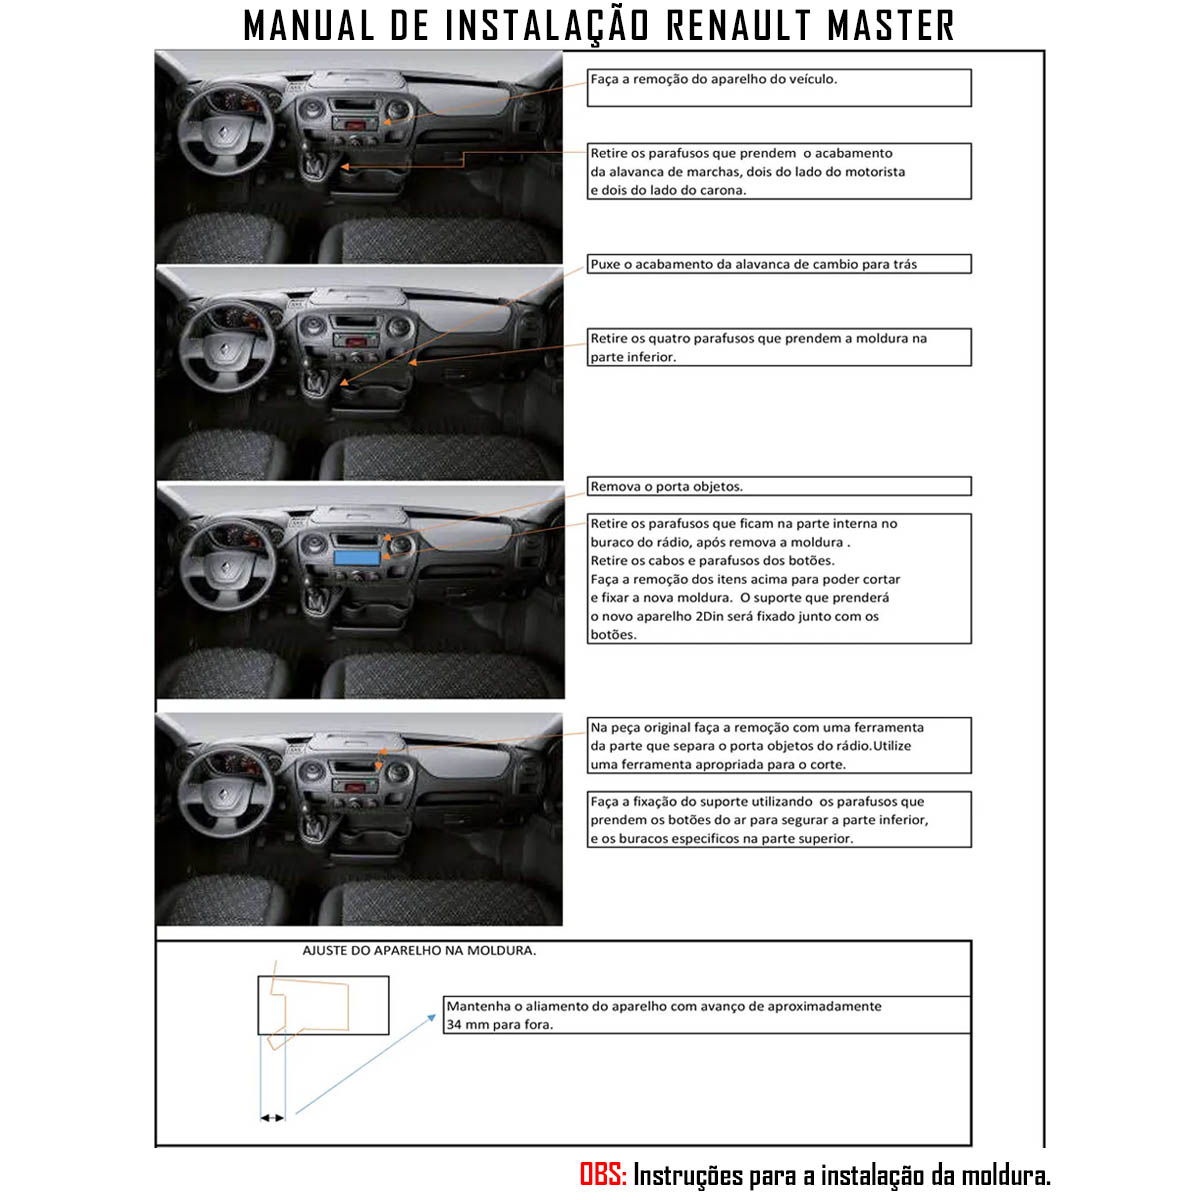 Multimídia Renault Master 2010 em Diante Espelhamento Bluetooth USB SD Card + Moldura + Câmera Borboleta + Chicote + Adaptador de Antena